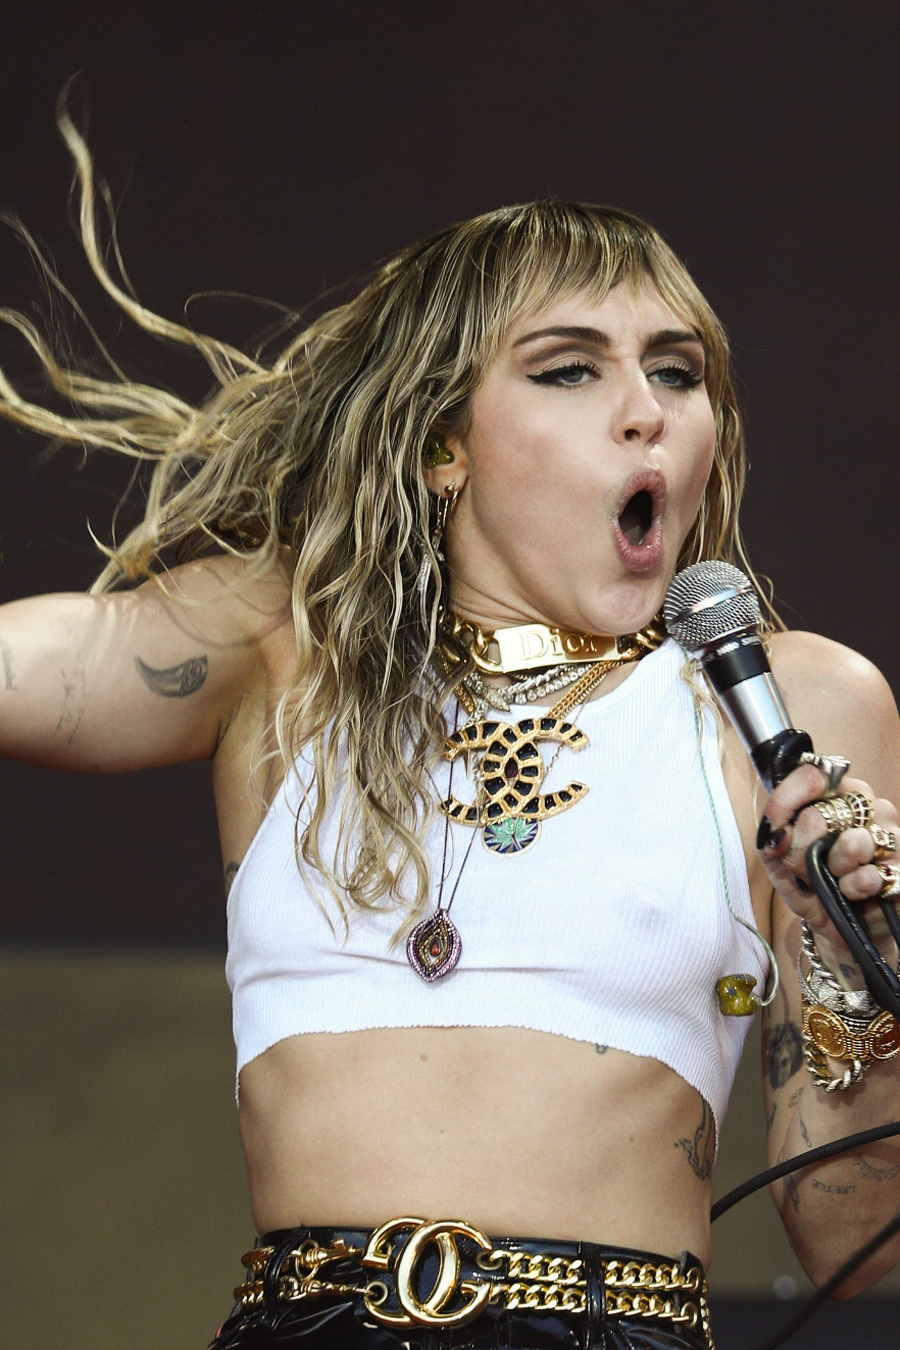 Speváčka Miley Cyrus